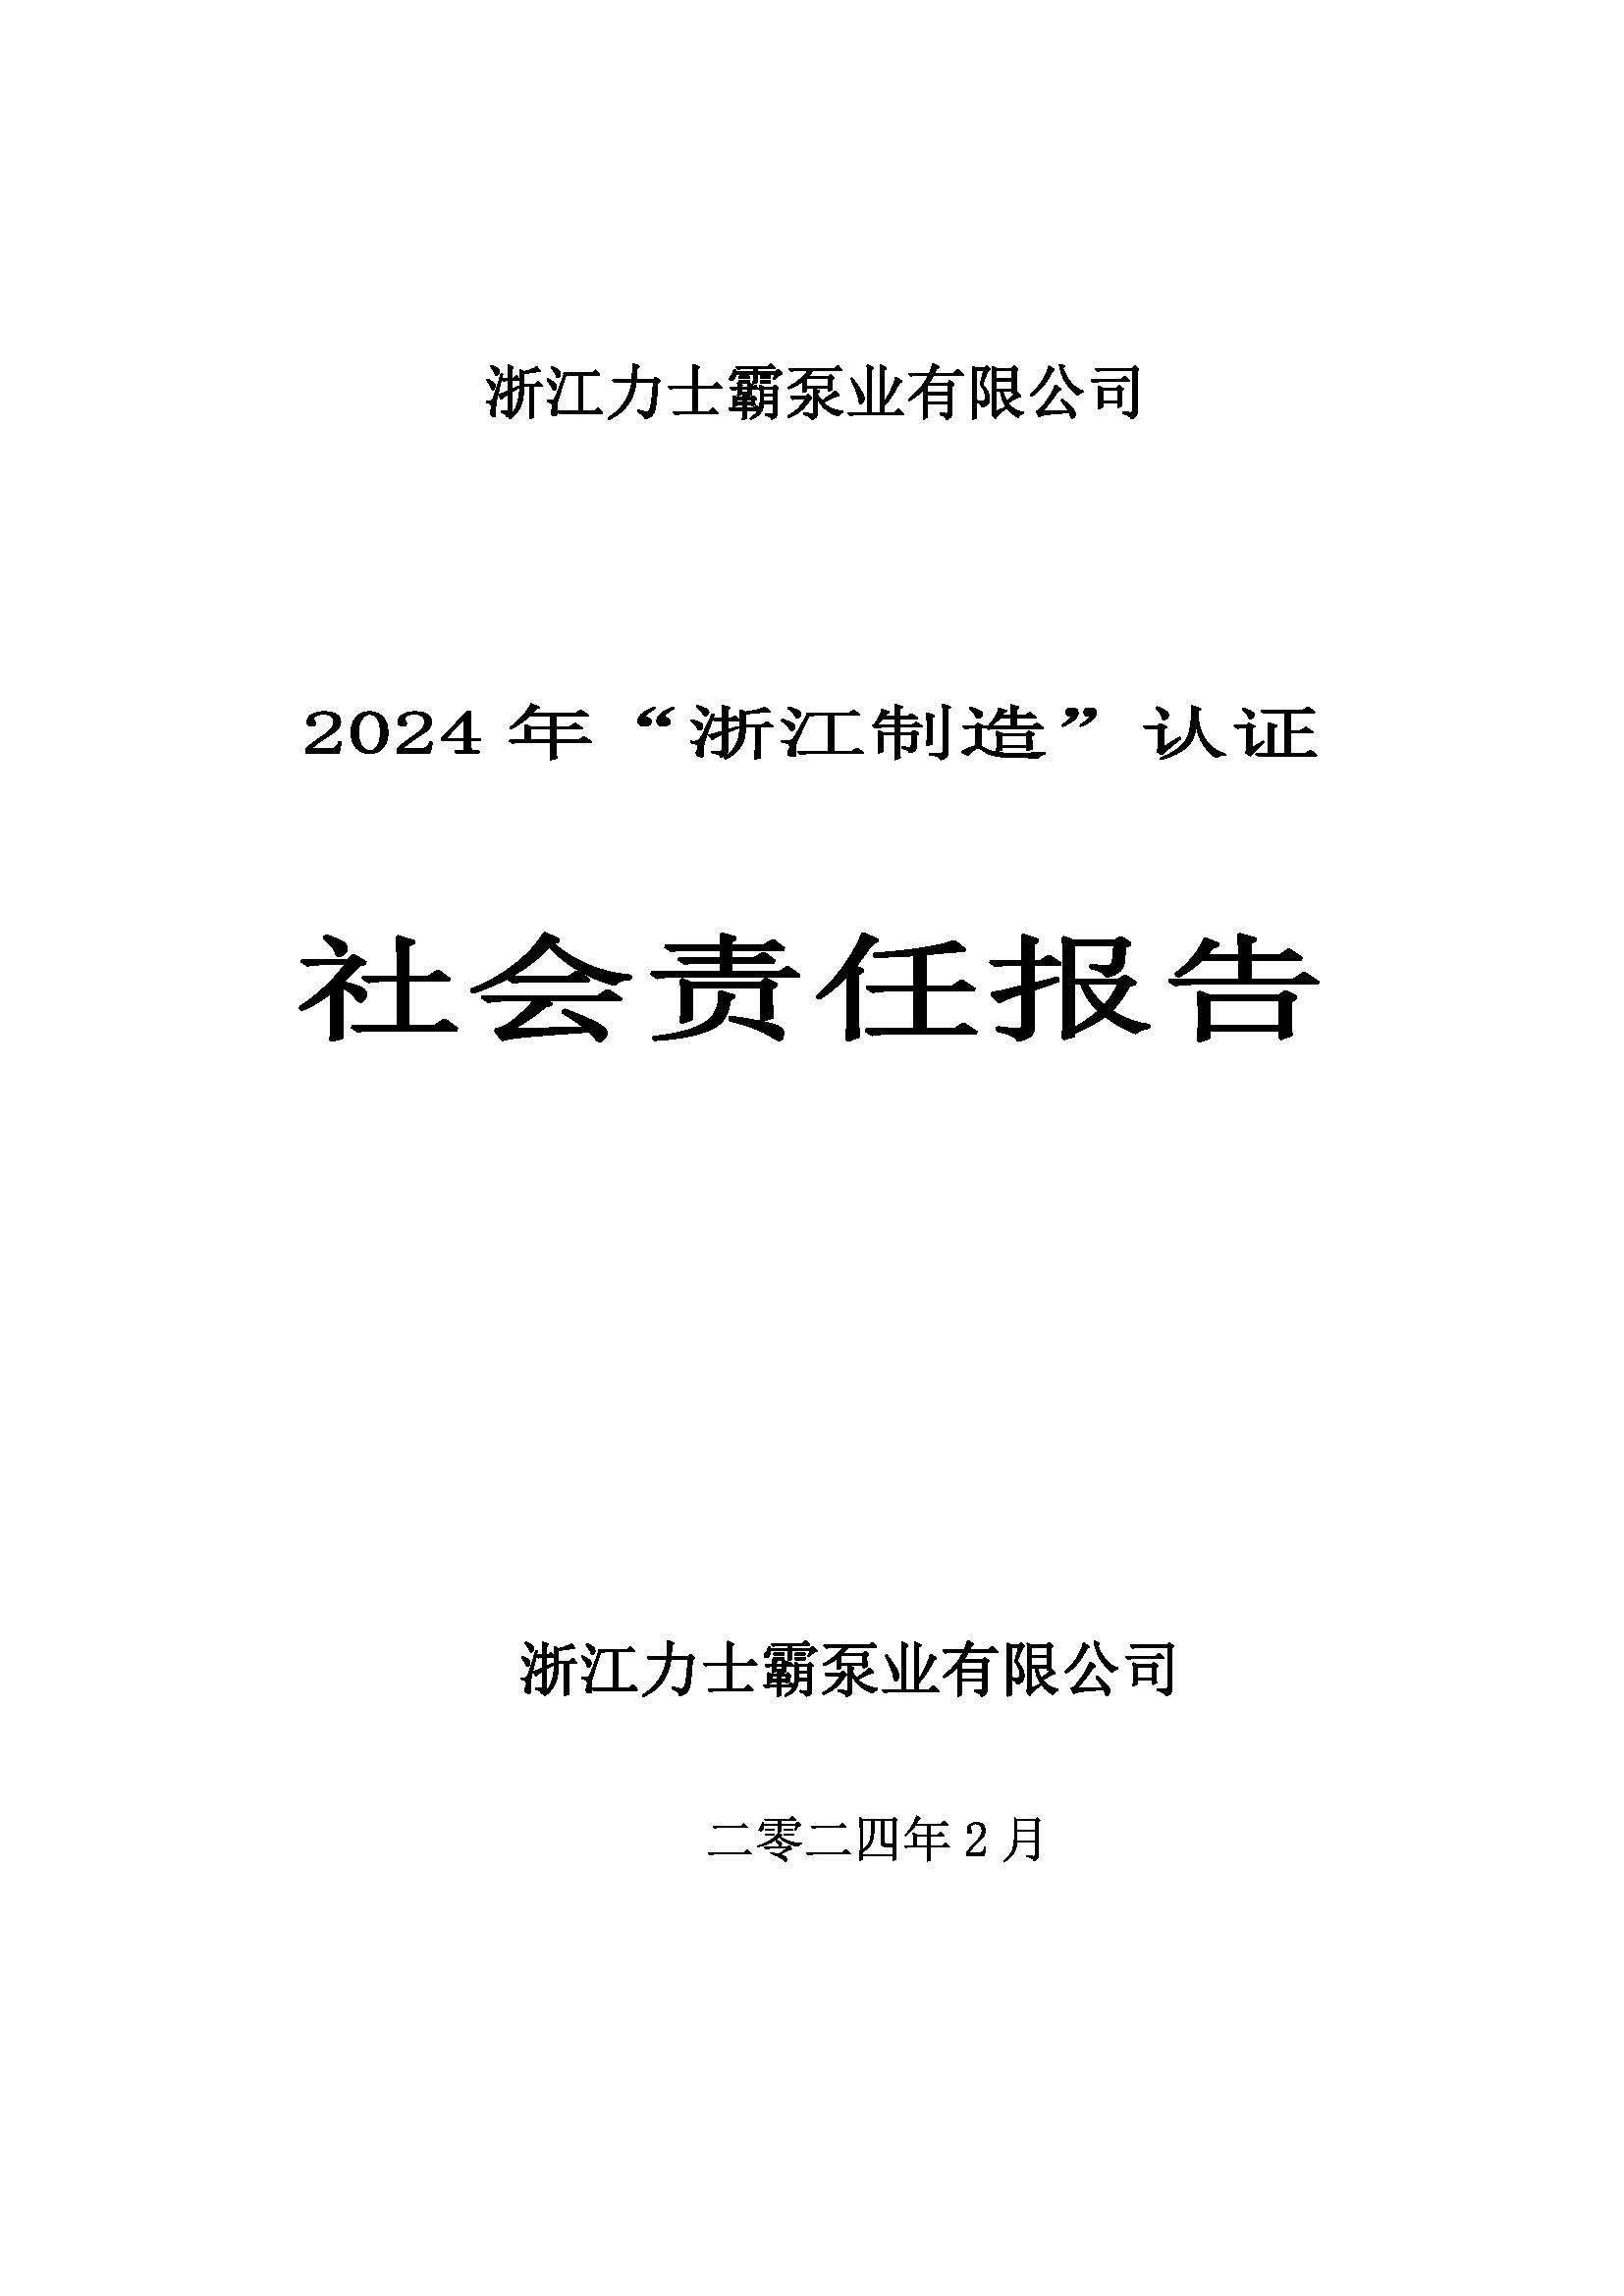 社会责任报告-2024年“浙江制造”认证(图1)